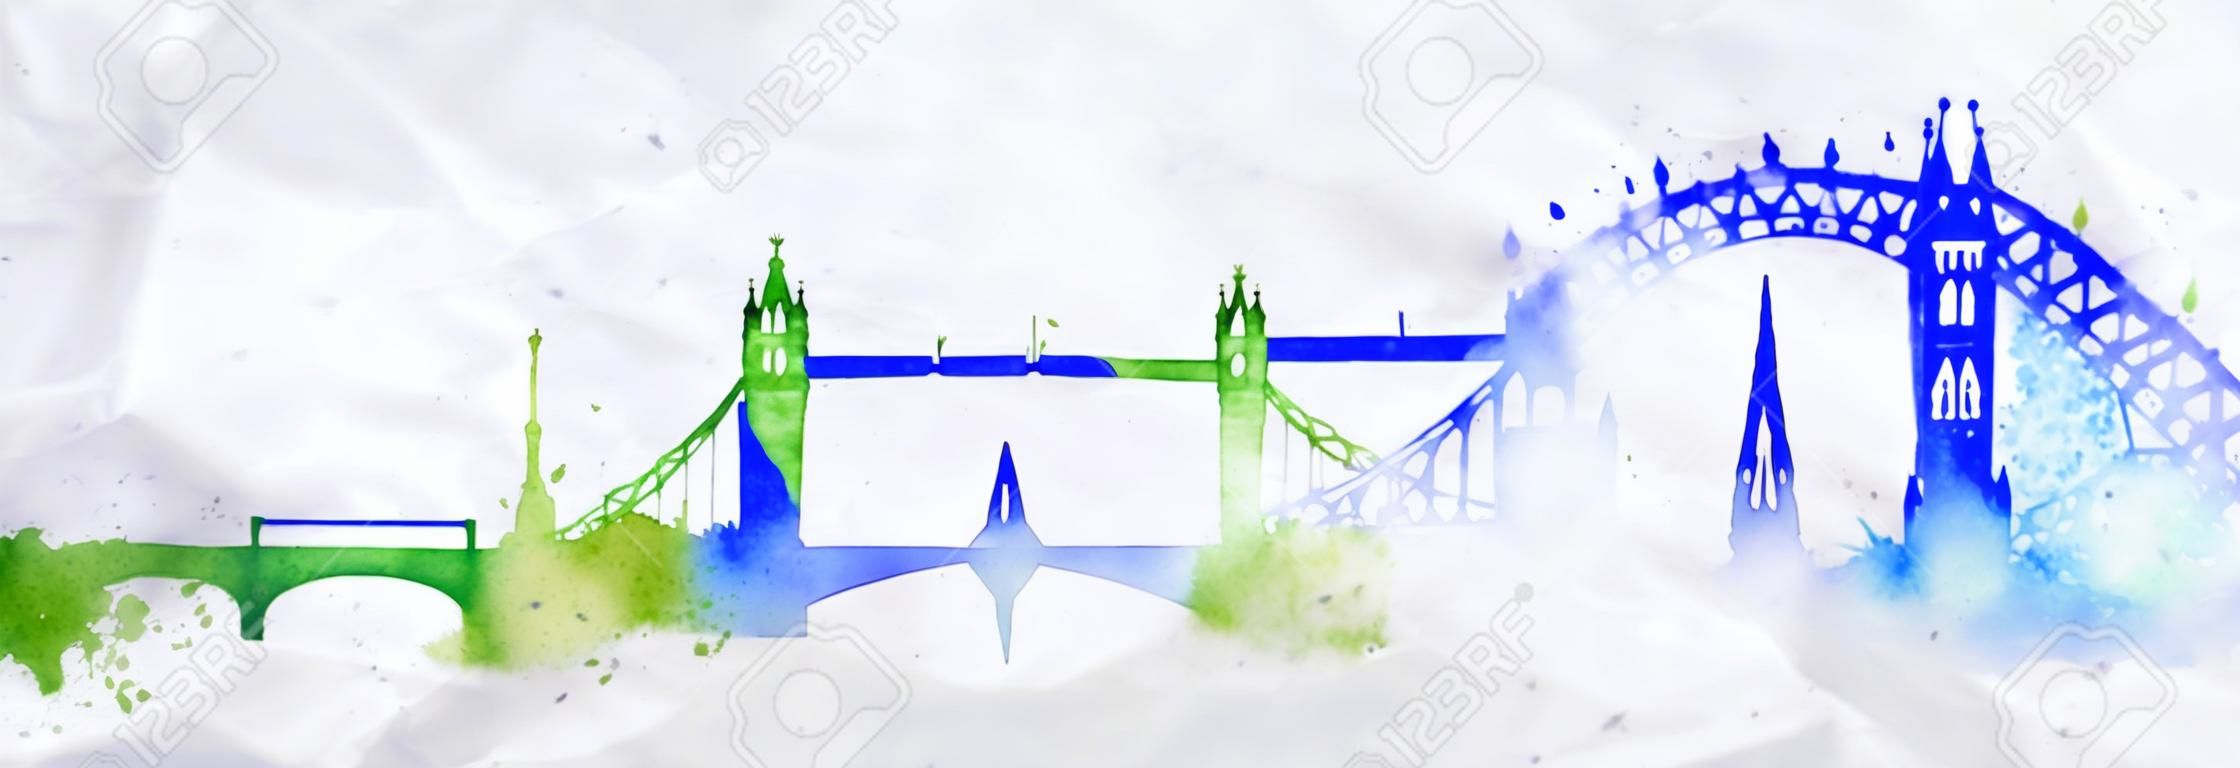 Sylweta miasta Londyn malowane plamy akwarela spada smugi zabytki z niebiesko-zielonych barwach